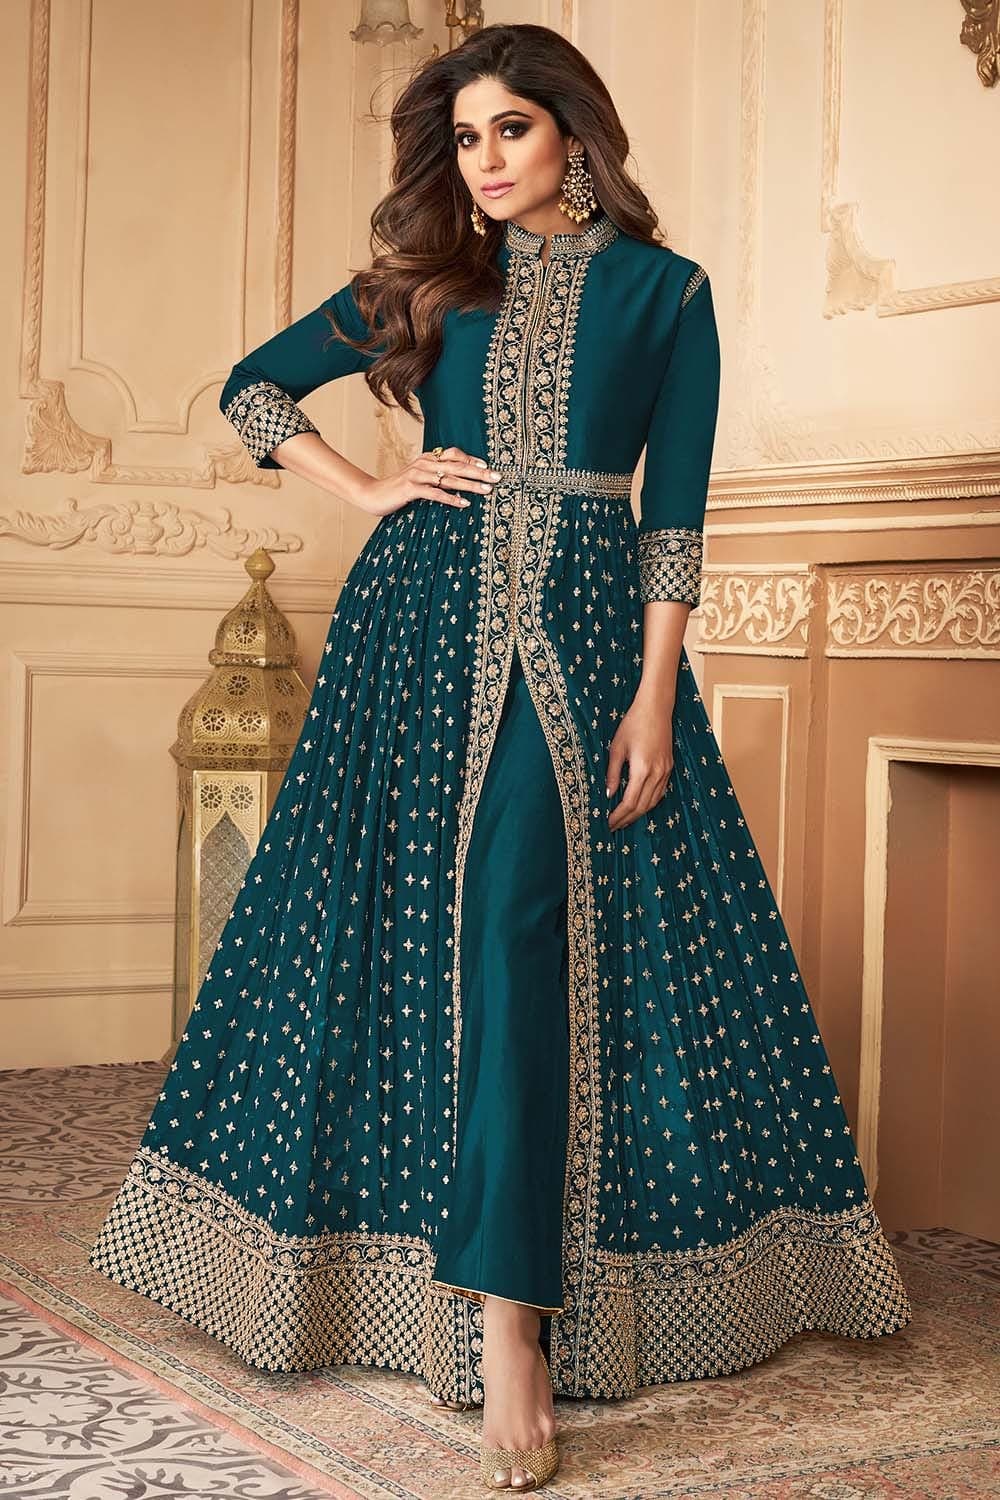 Anarkali dress pattern, Saree dress, Kurta designs